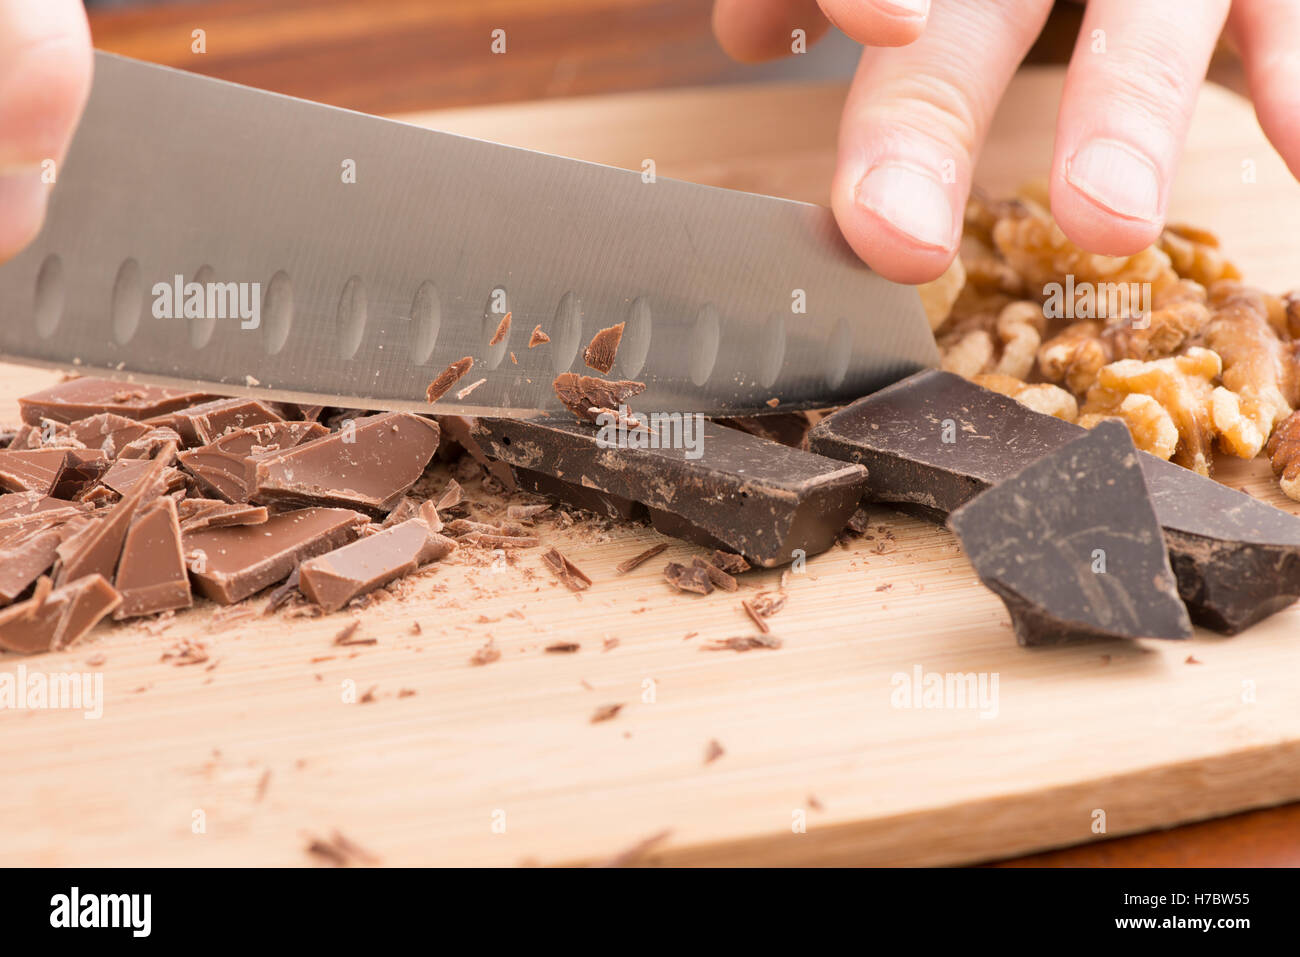 Chef hacken Schokolade mit Messer auf Schneidebrett. Dessert-Zubereitung in der Küche mit heller und dunkler Schokolade. Stockfoto